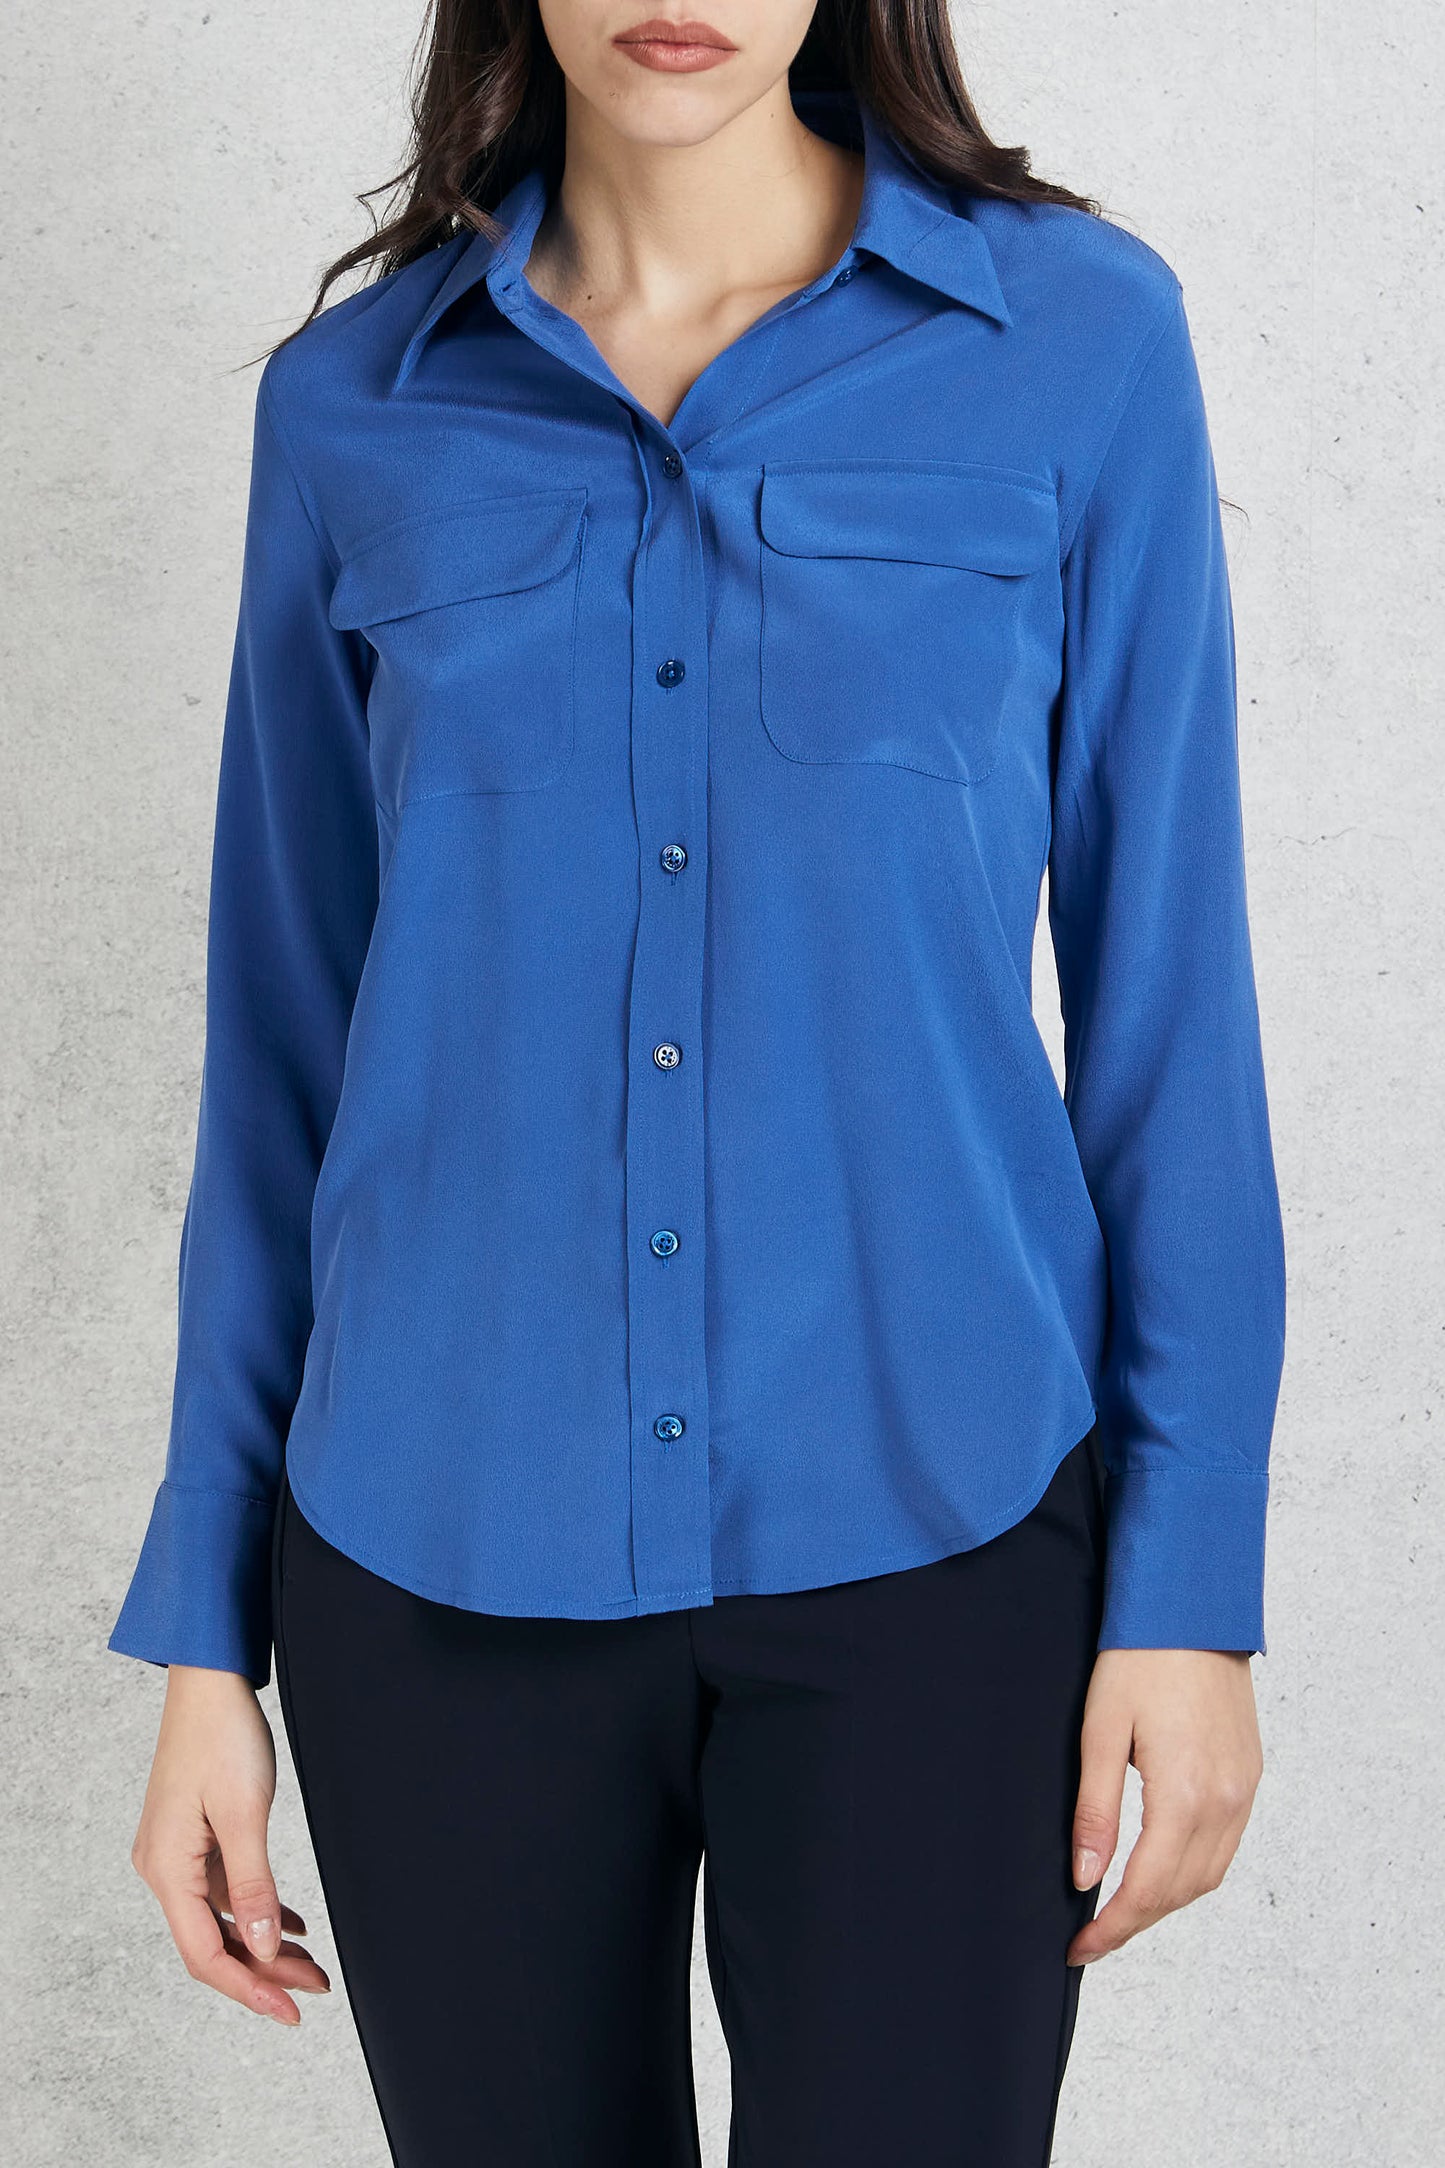  Equipment Femme Blue Silk Shirt For Women Blu Donna - 1